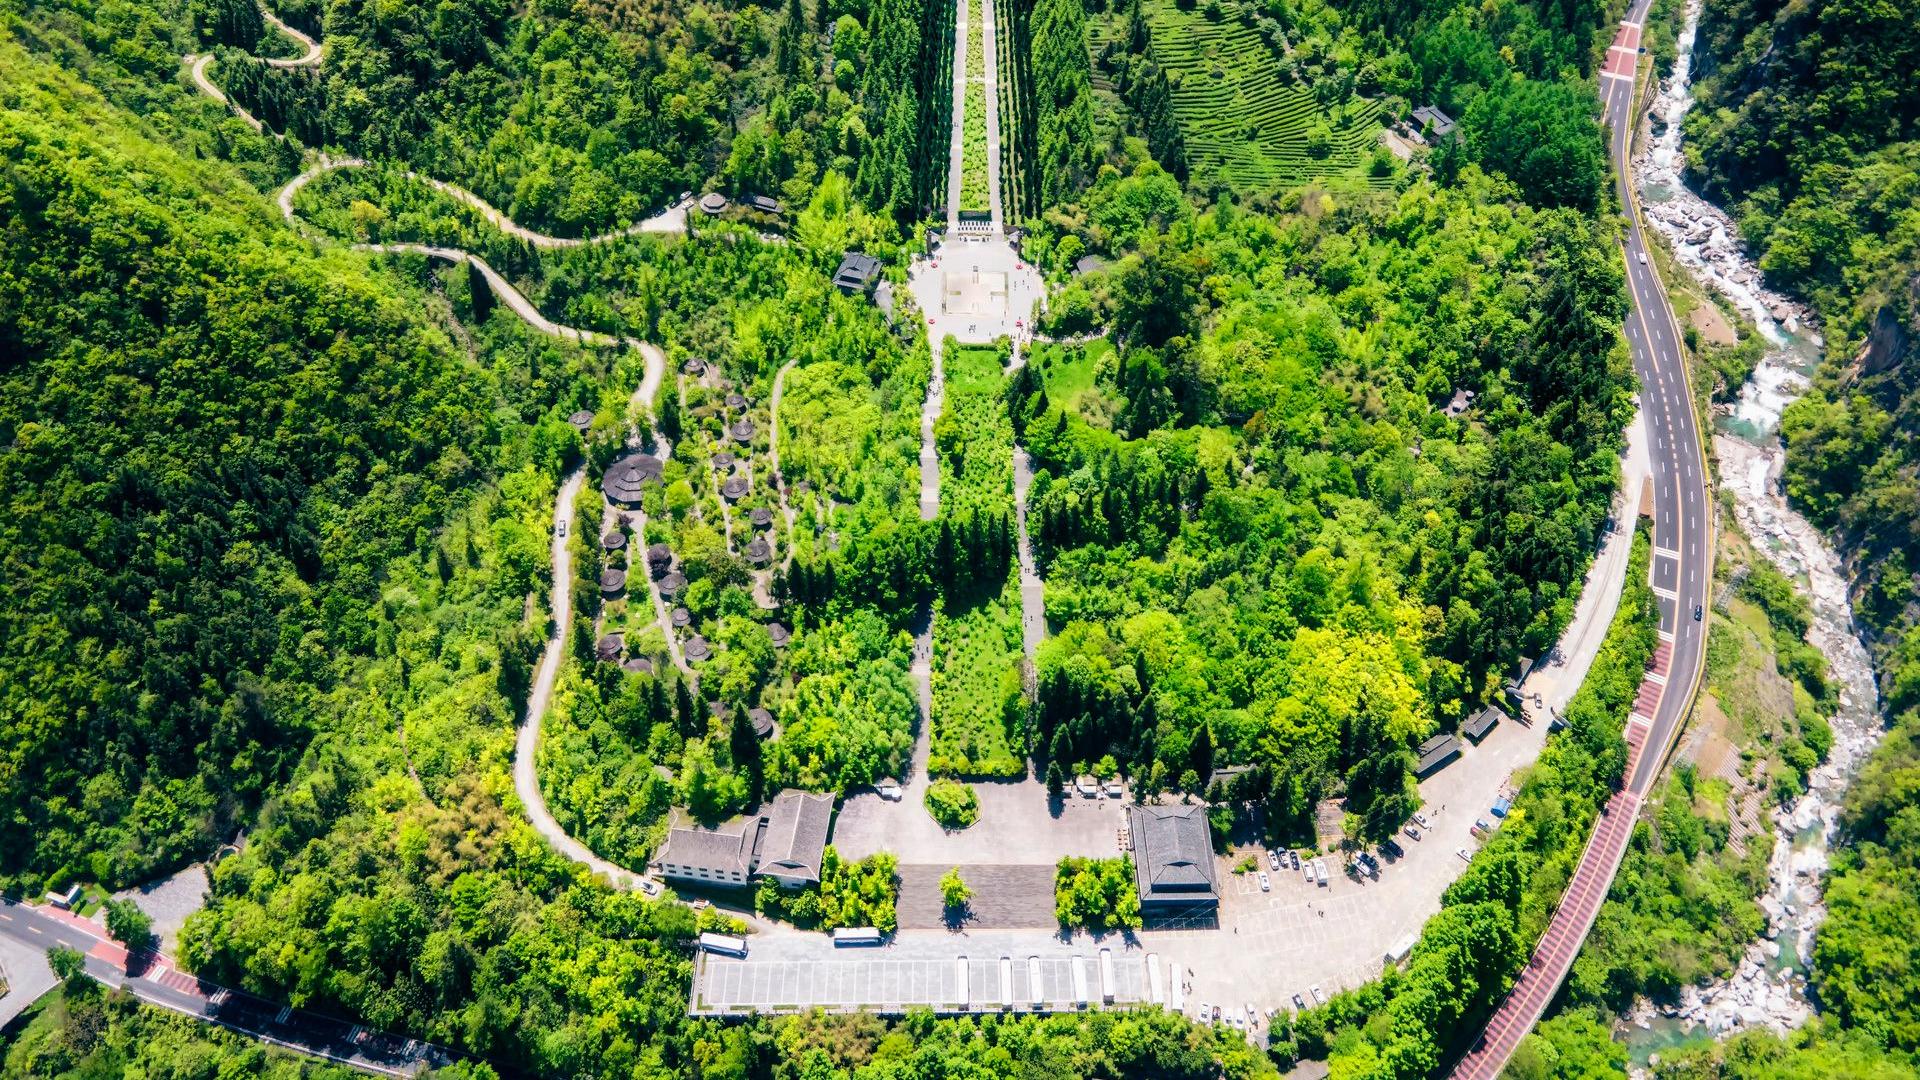 神农架|神农架旅游景点——游遍中国